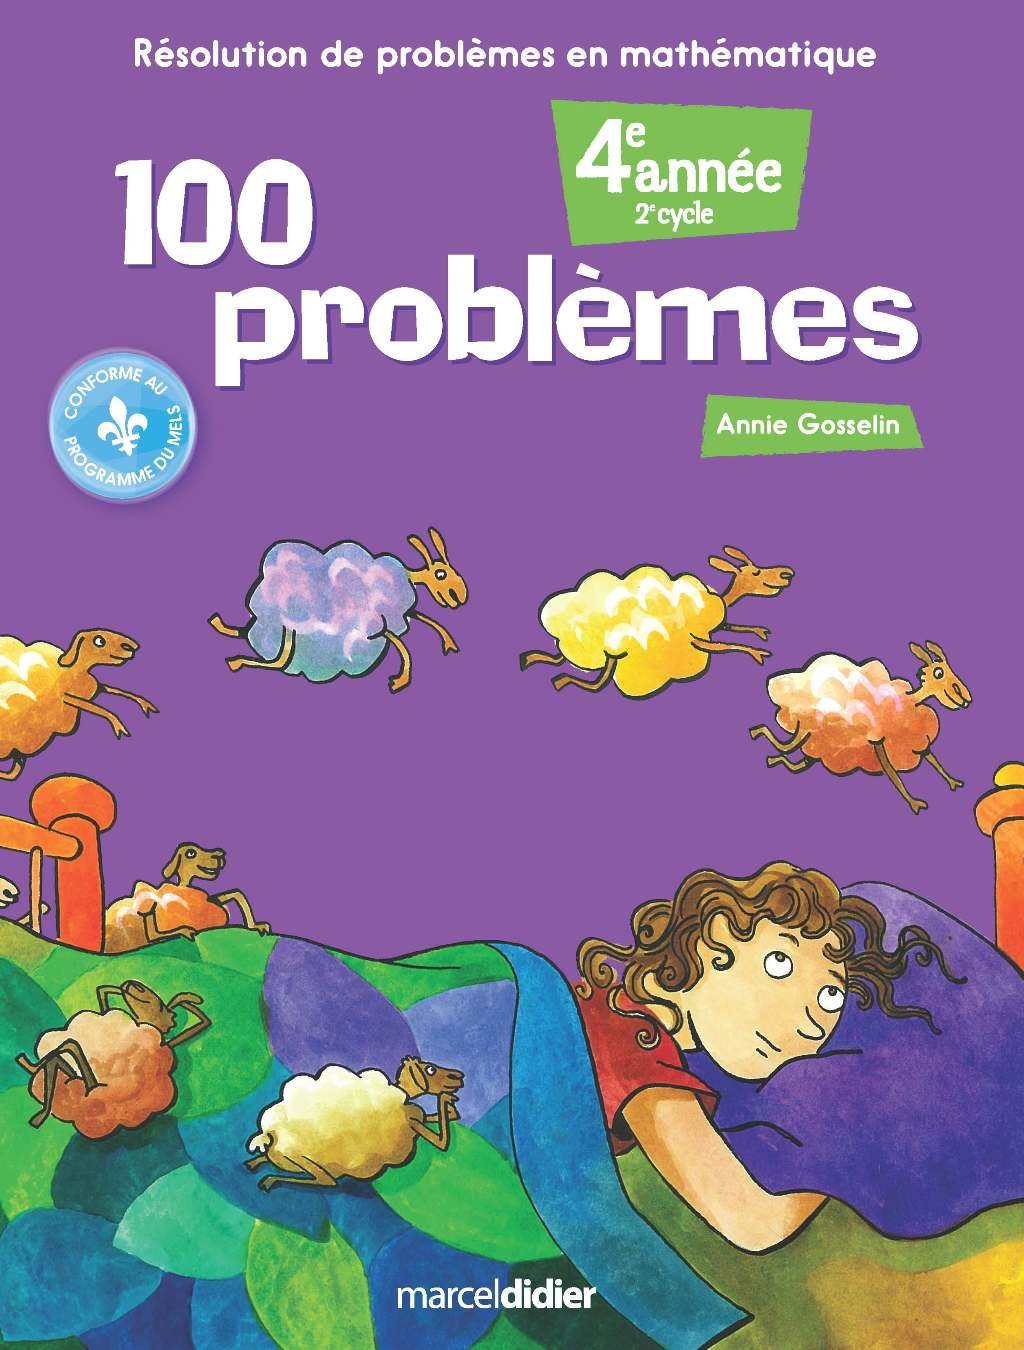 100 problèmes: Résolution de problemes en mathématique (4e année) - Annie Gosselin